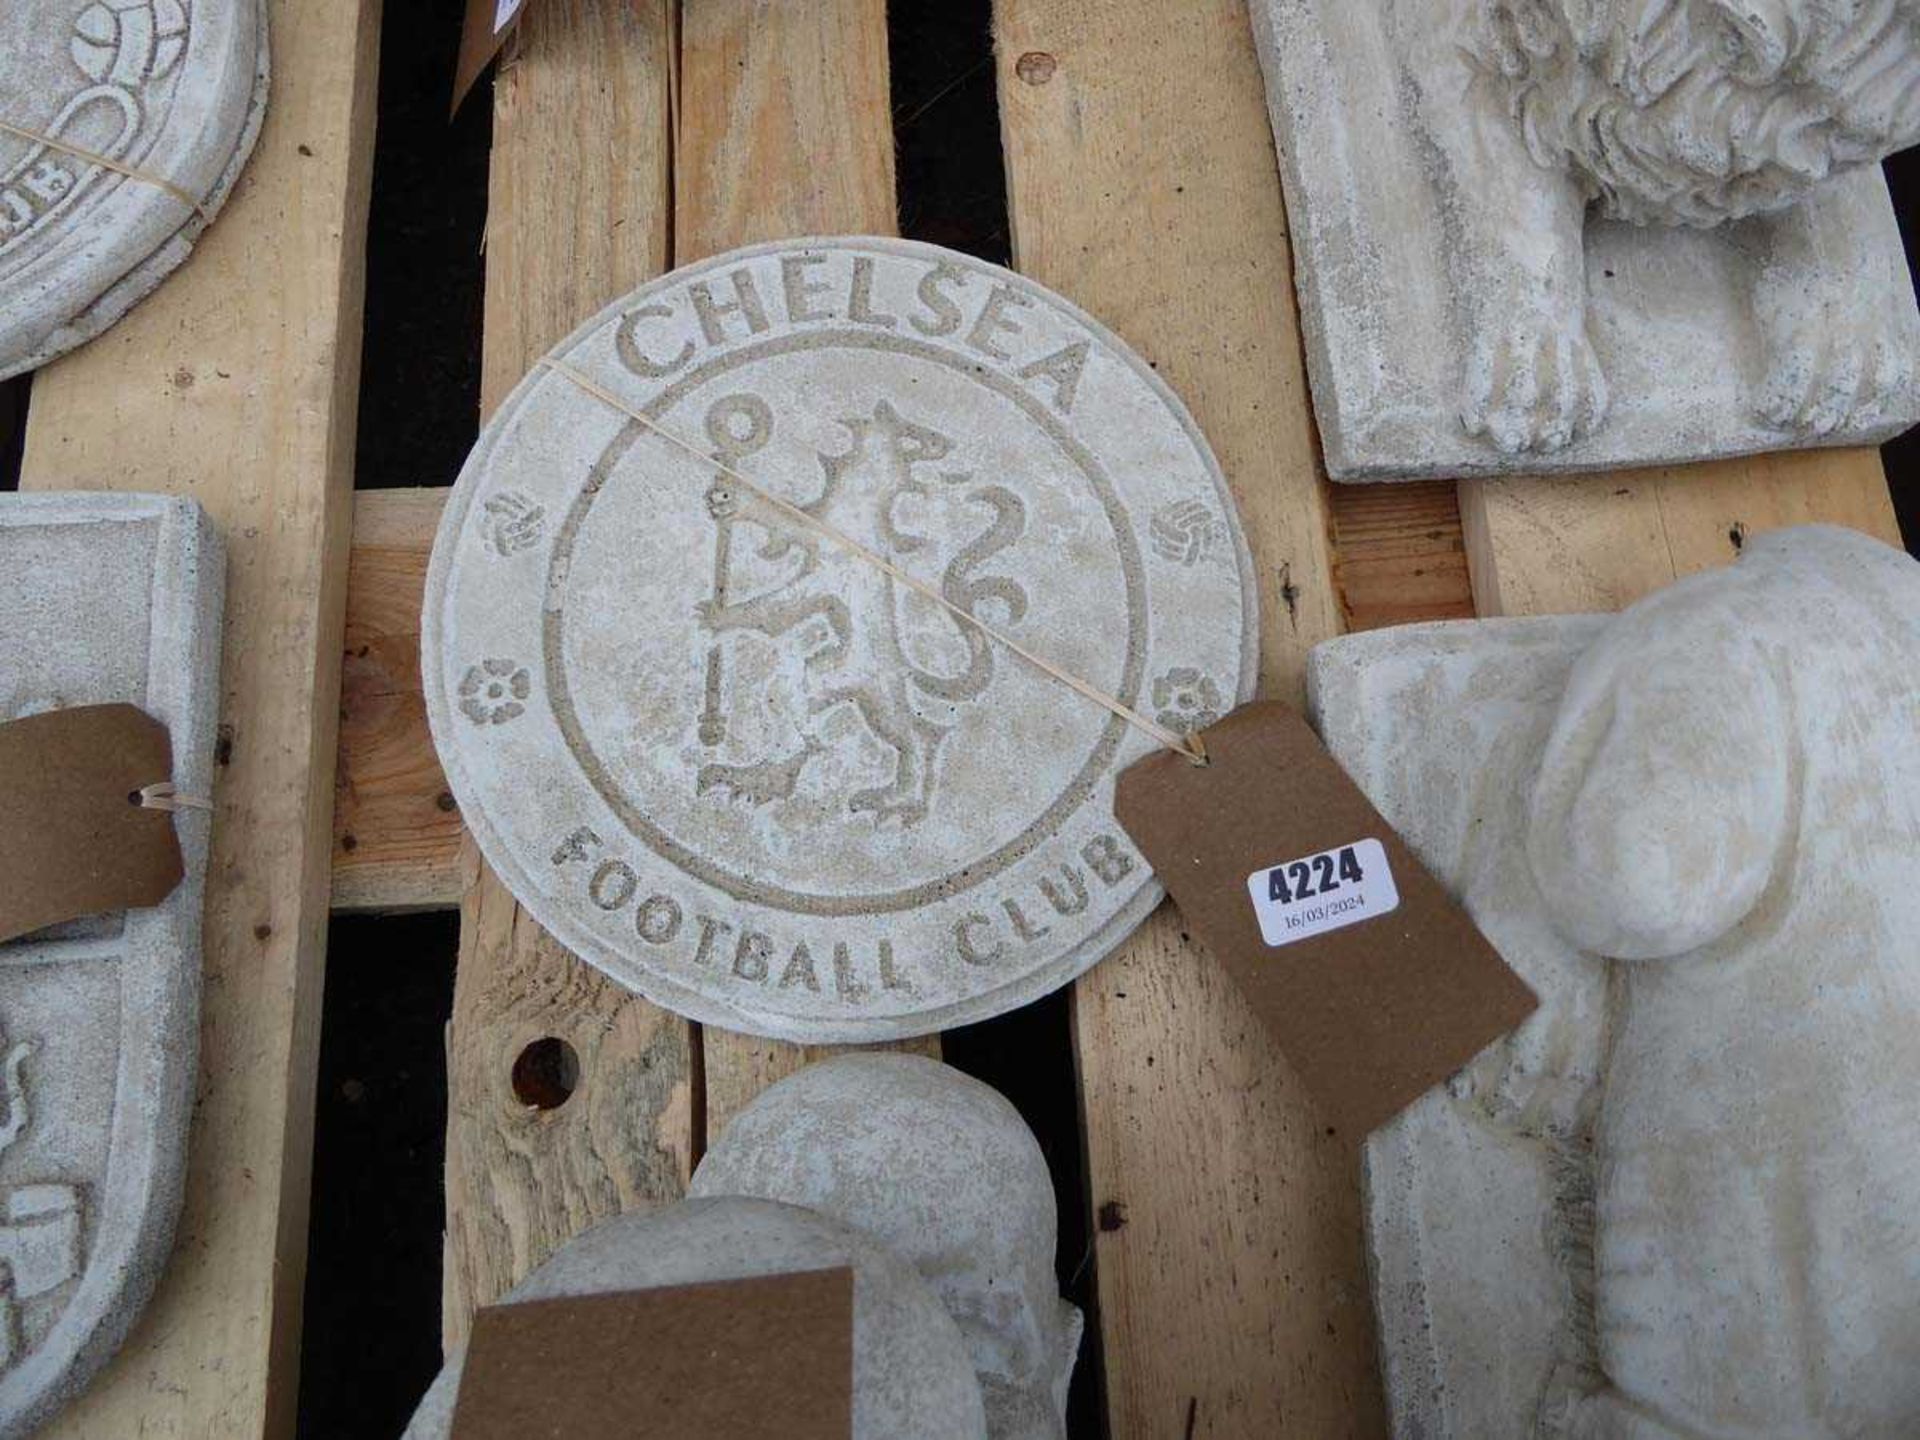 Concrete Chelsea plaque